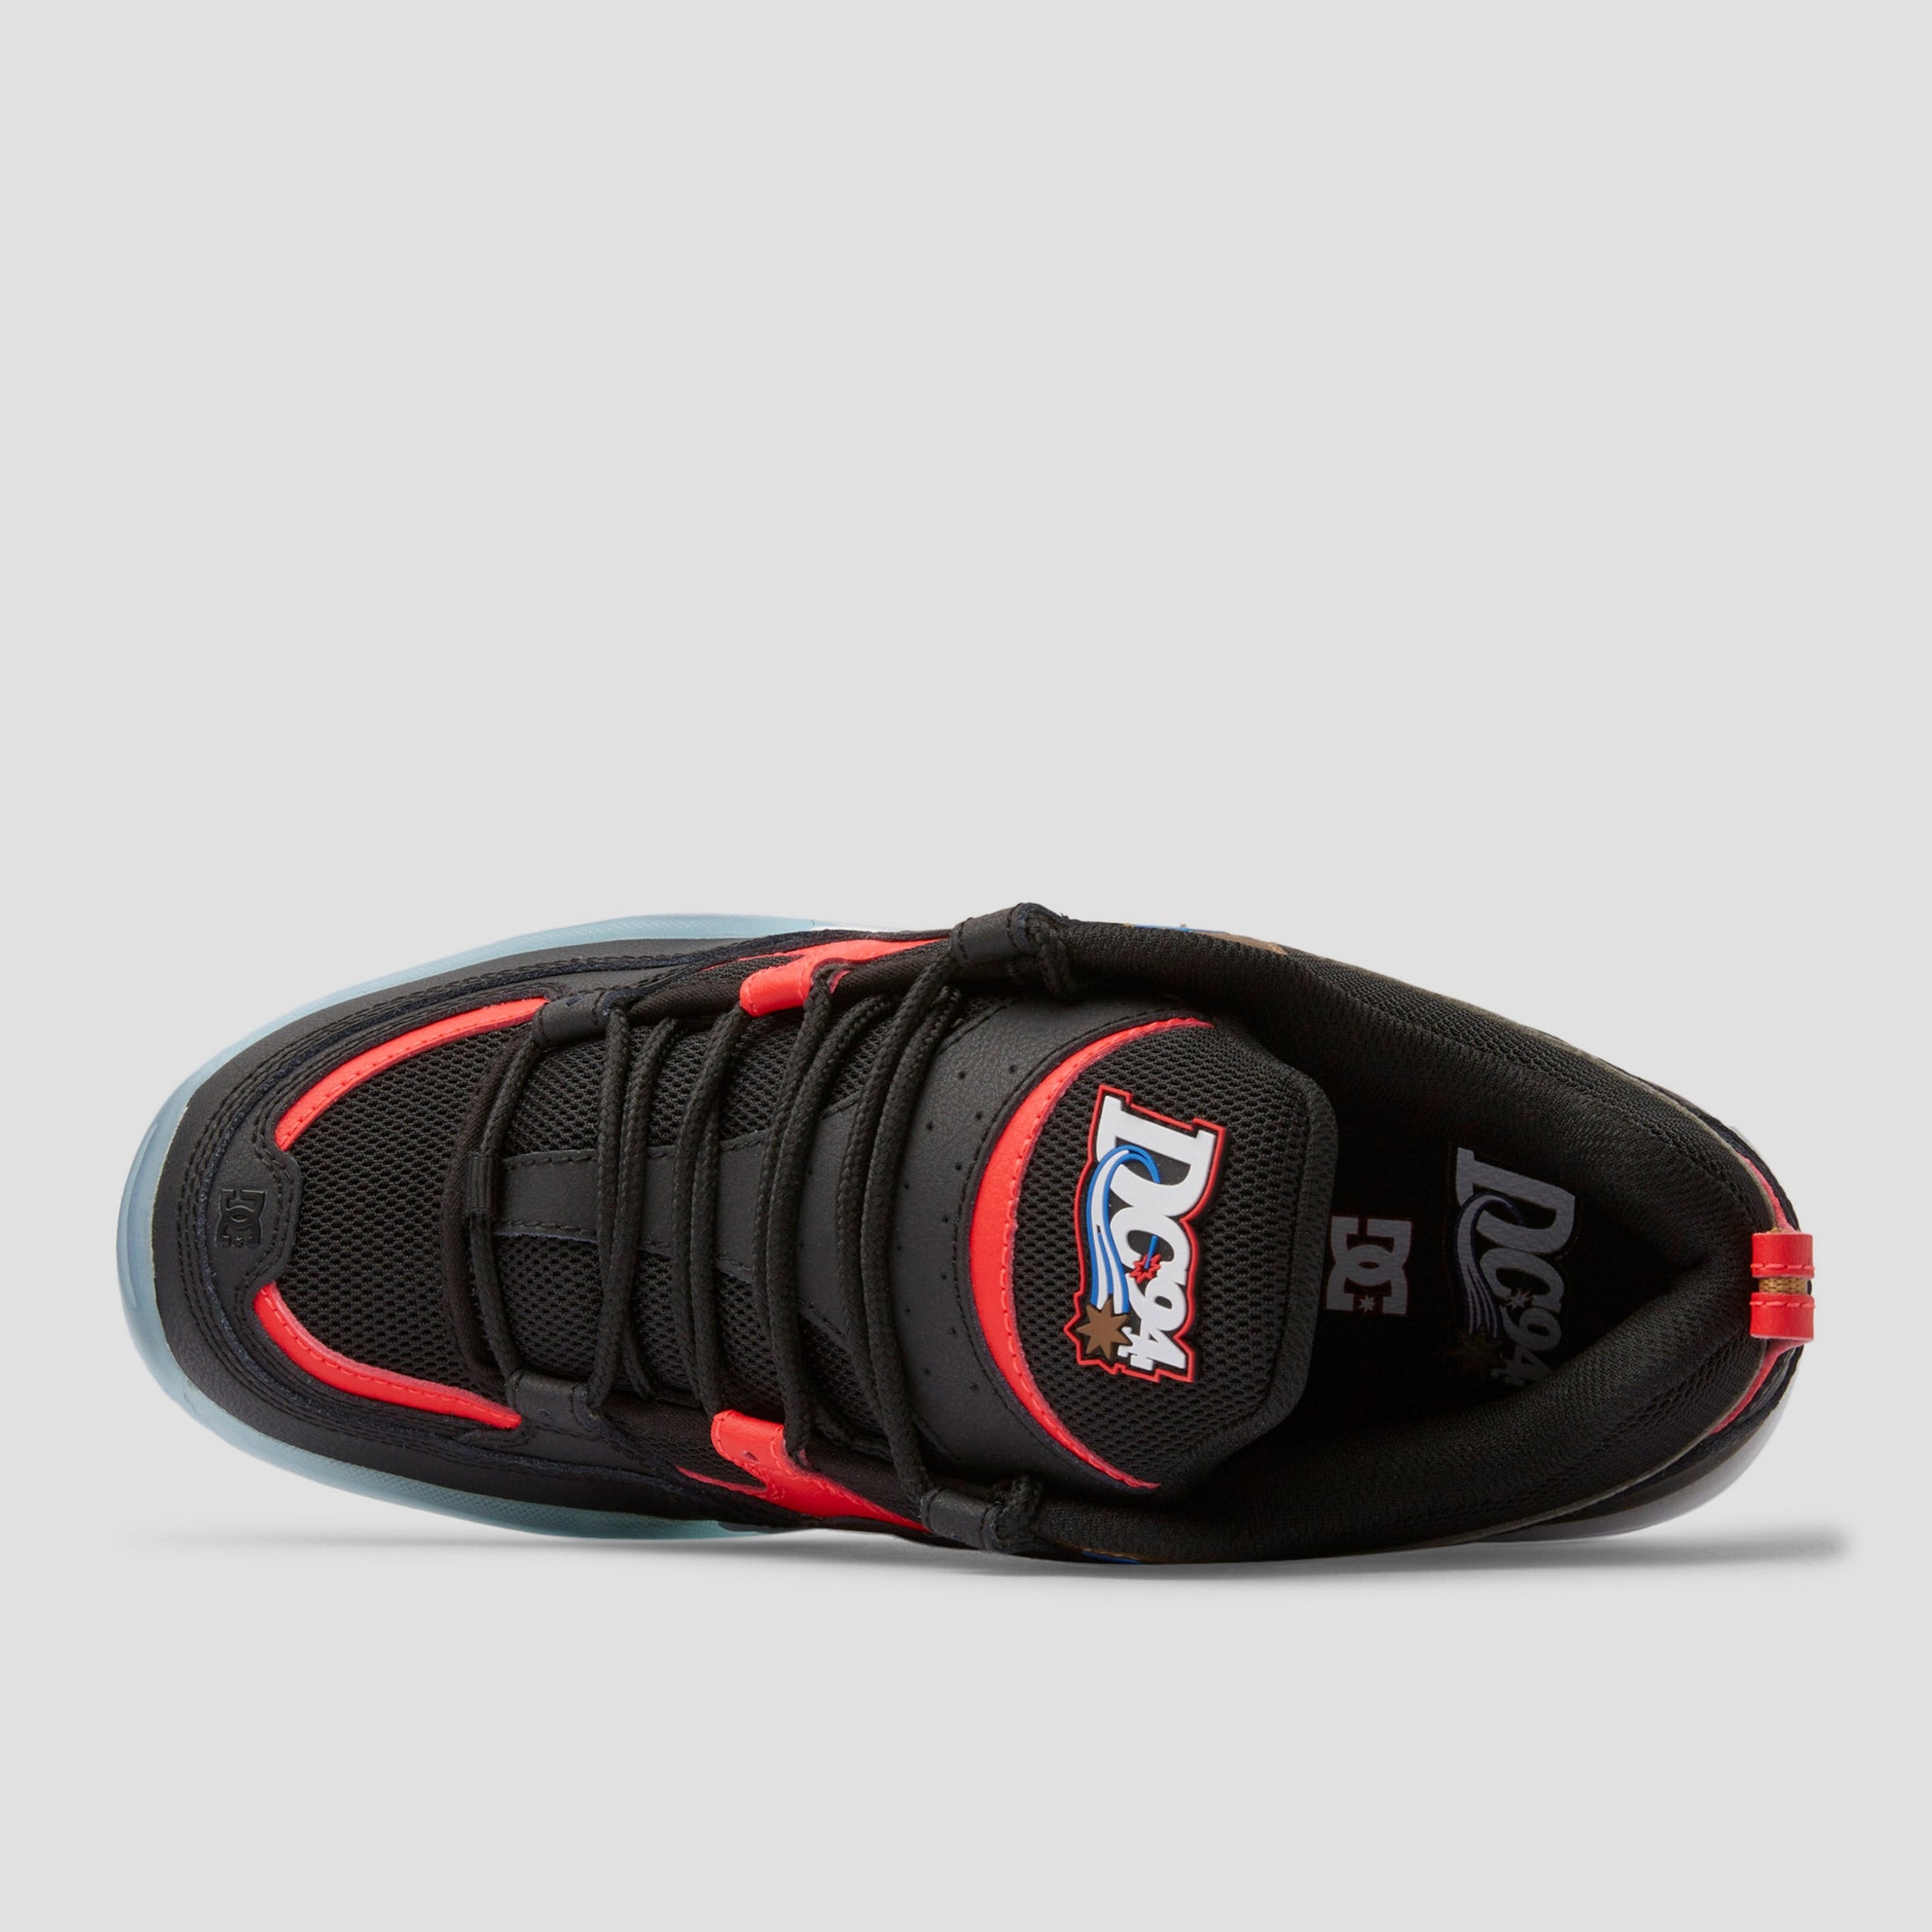 DC Truth OG Skate Shoes Black Red Blue